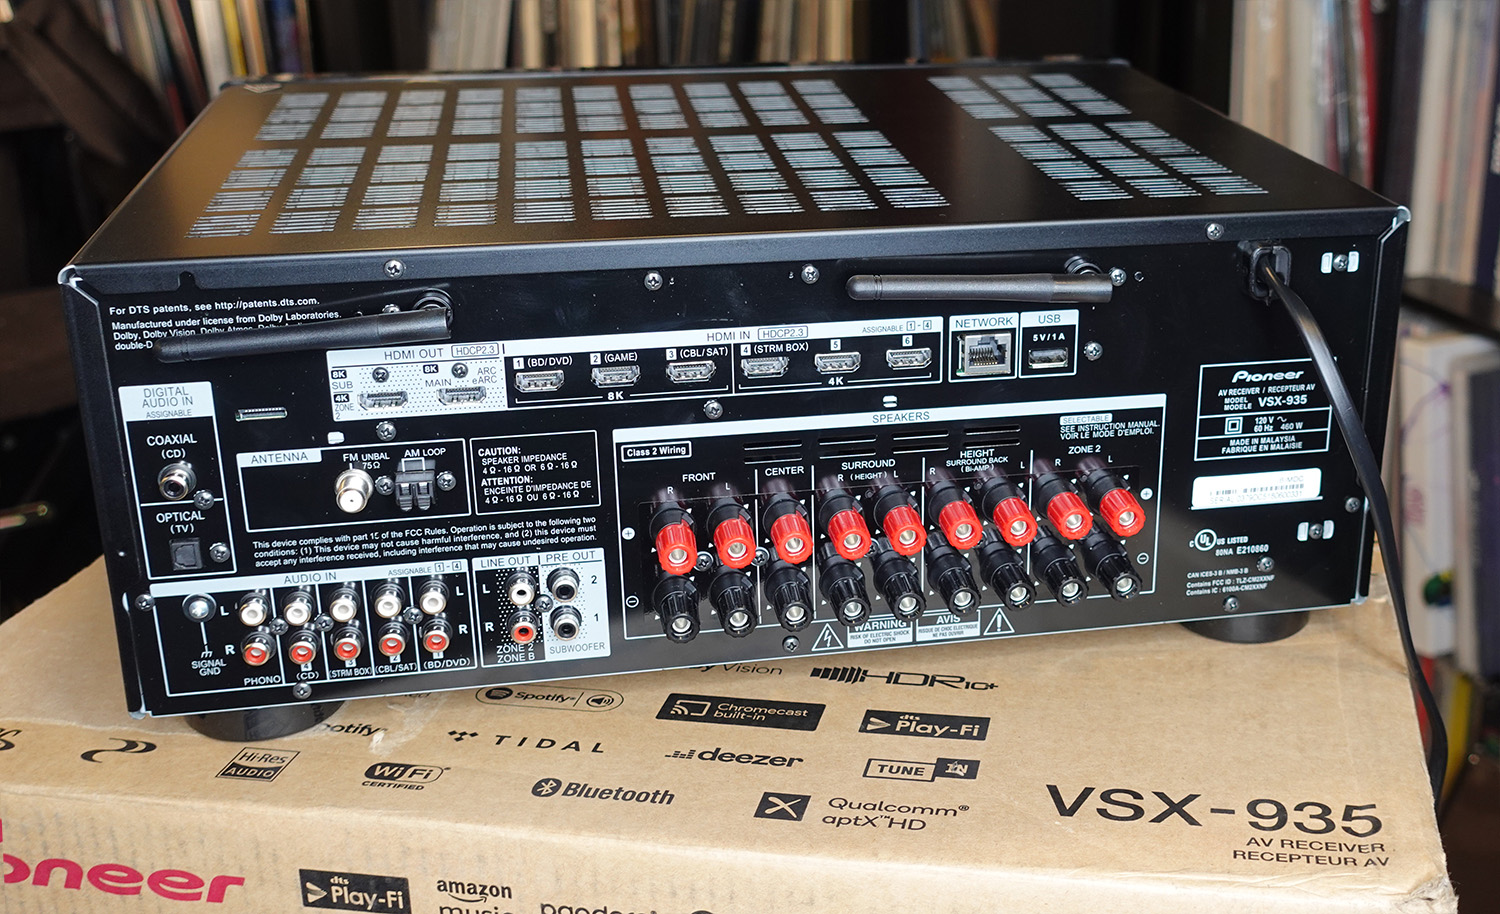 VSX-935 7.2-Channel Network AV Receiver